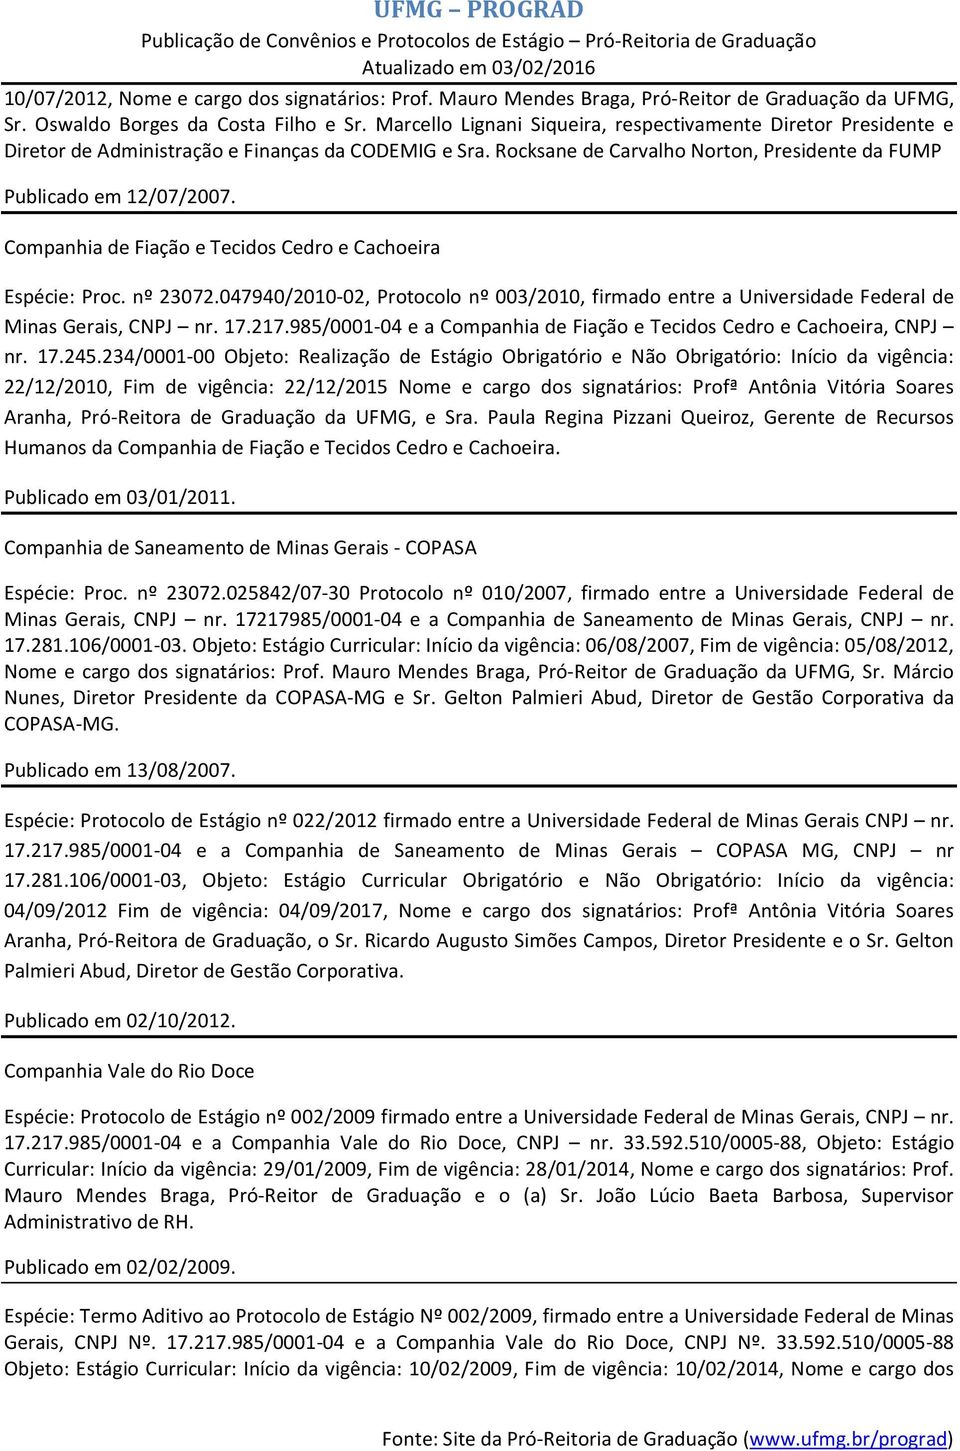 Companhia de Fiação e Tecidos Cedro e Cachoeira Espécie: Proc. nº 23072.047940/2010-02, Protocolo nº 003/2010, firmado entre a Universidade Federal de Minas Gerais, CNPJ nr. 17.217.